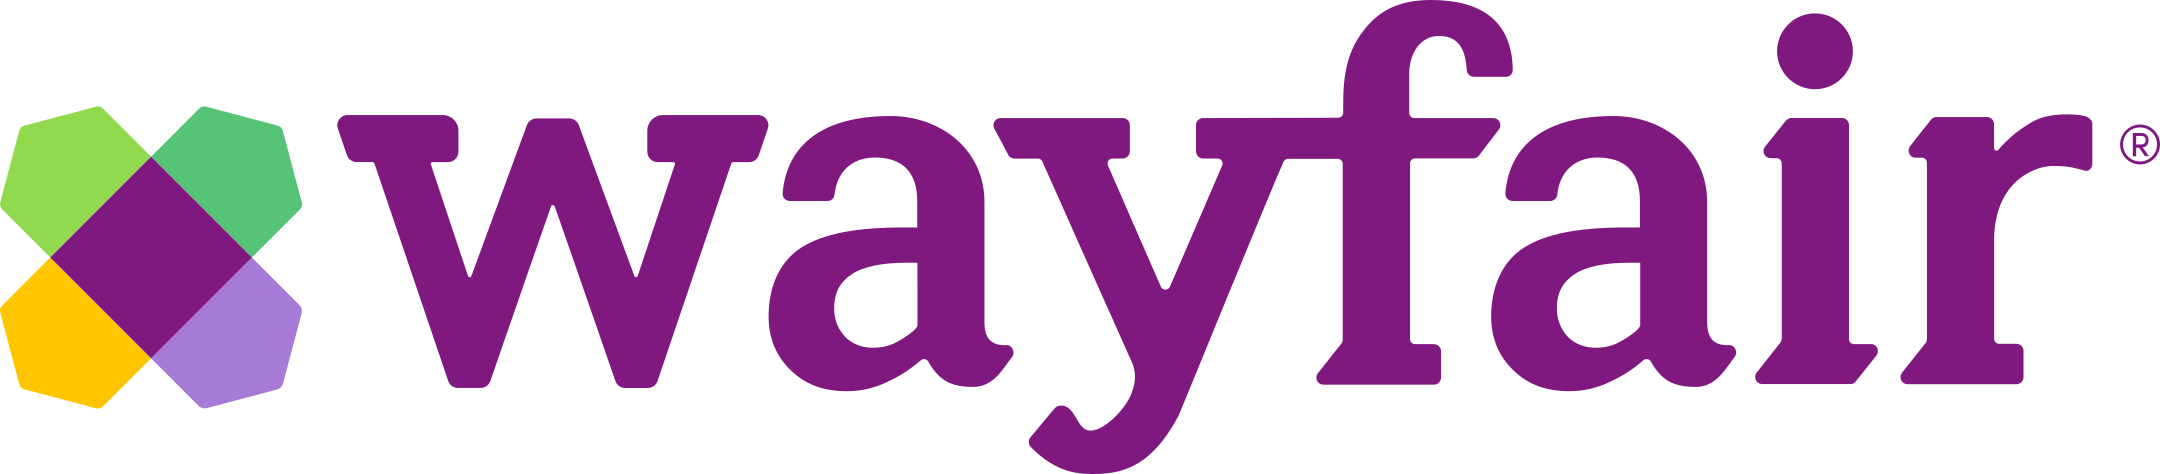 wayfair logo 1 - Wayfair Logo